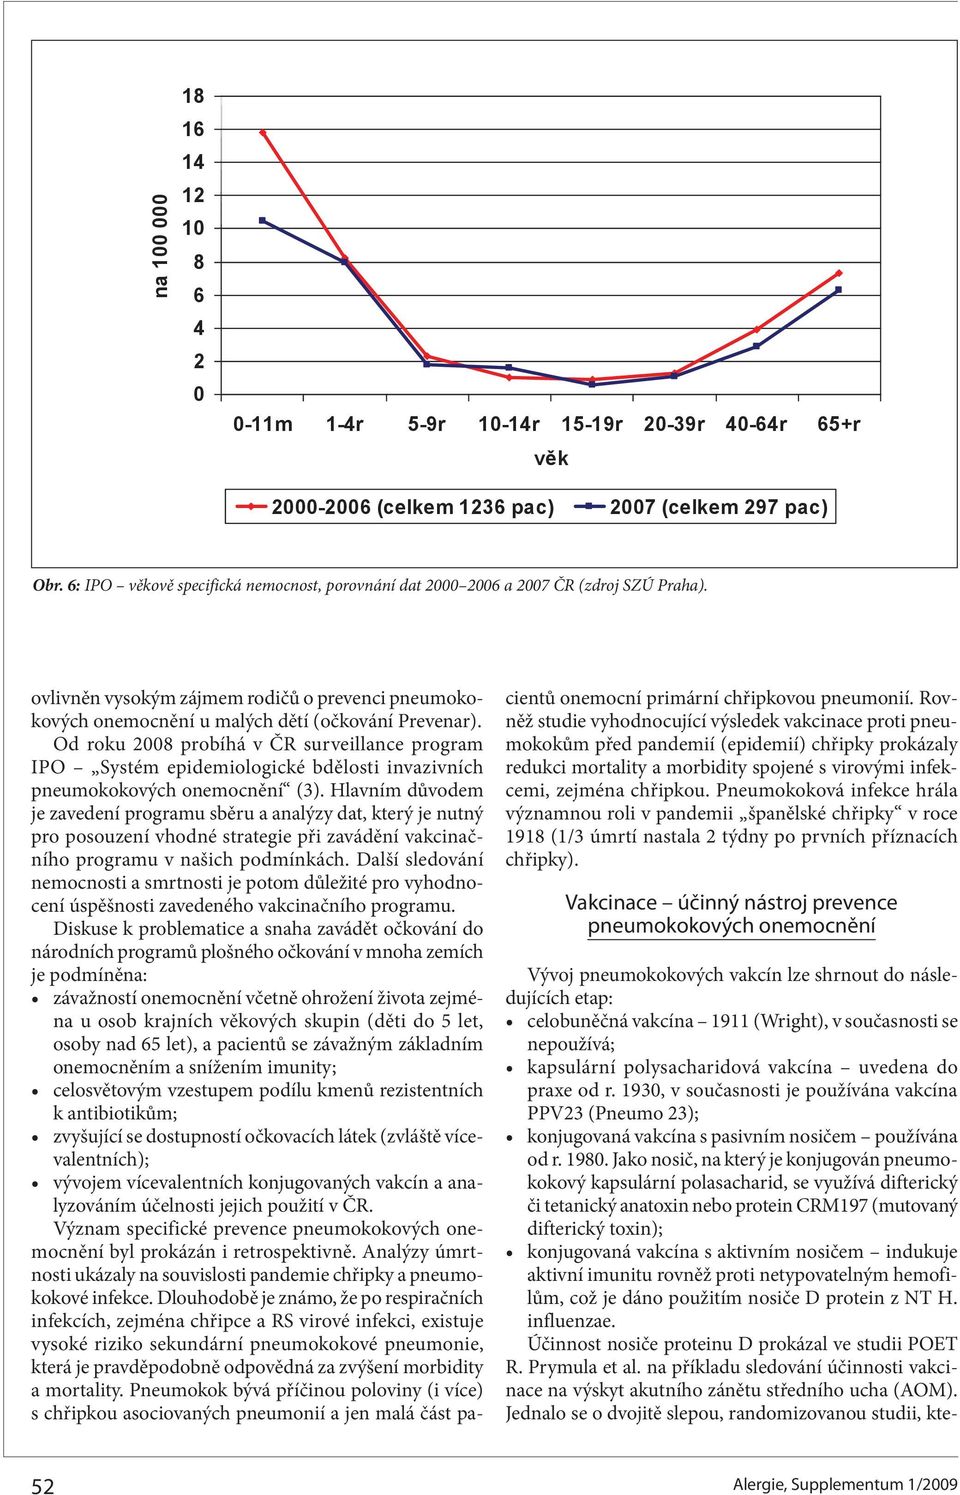 Od roku 2008 probíhá v ČR surveillance program IPO Systém epidemiologické bdělosti invazivních pneumokokových onemocnění (3).